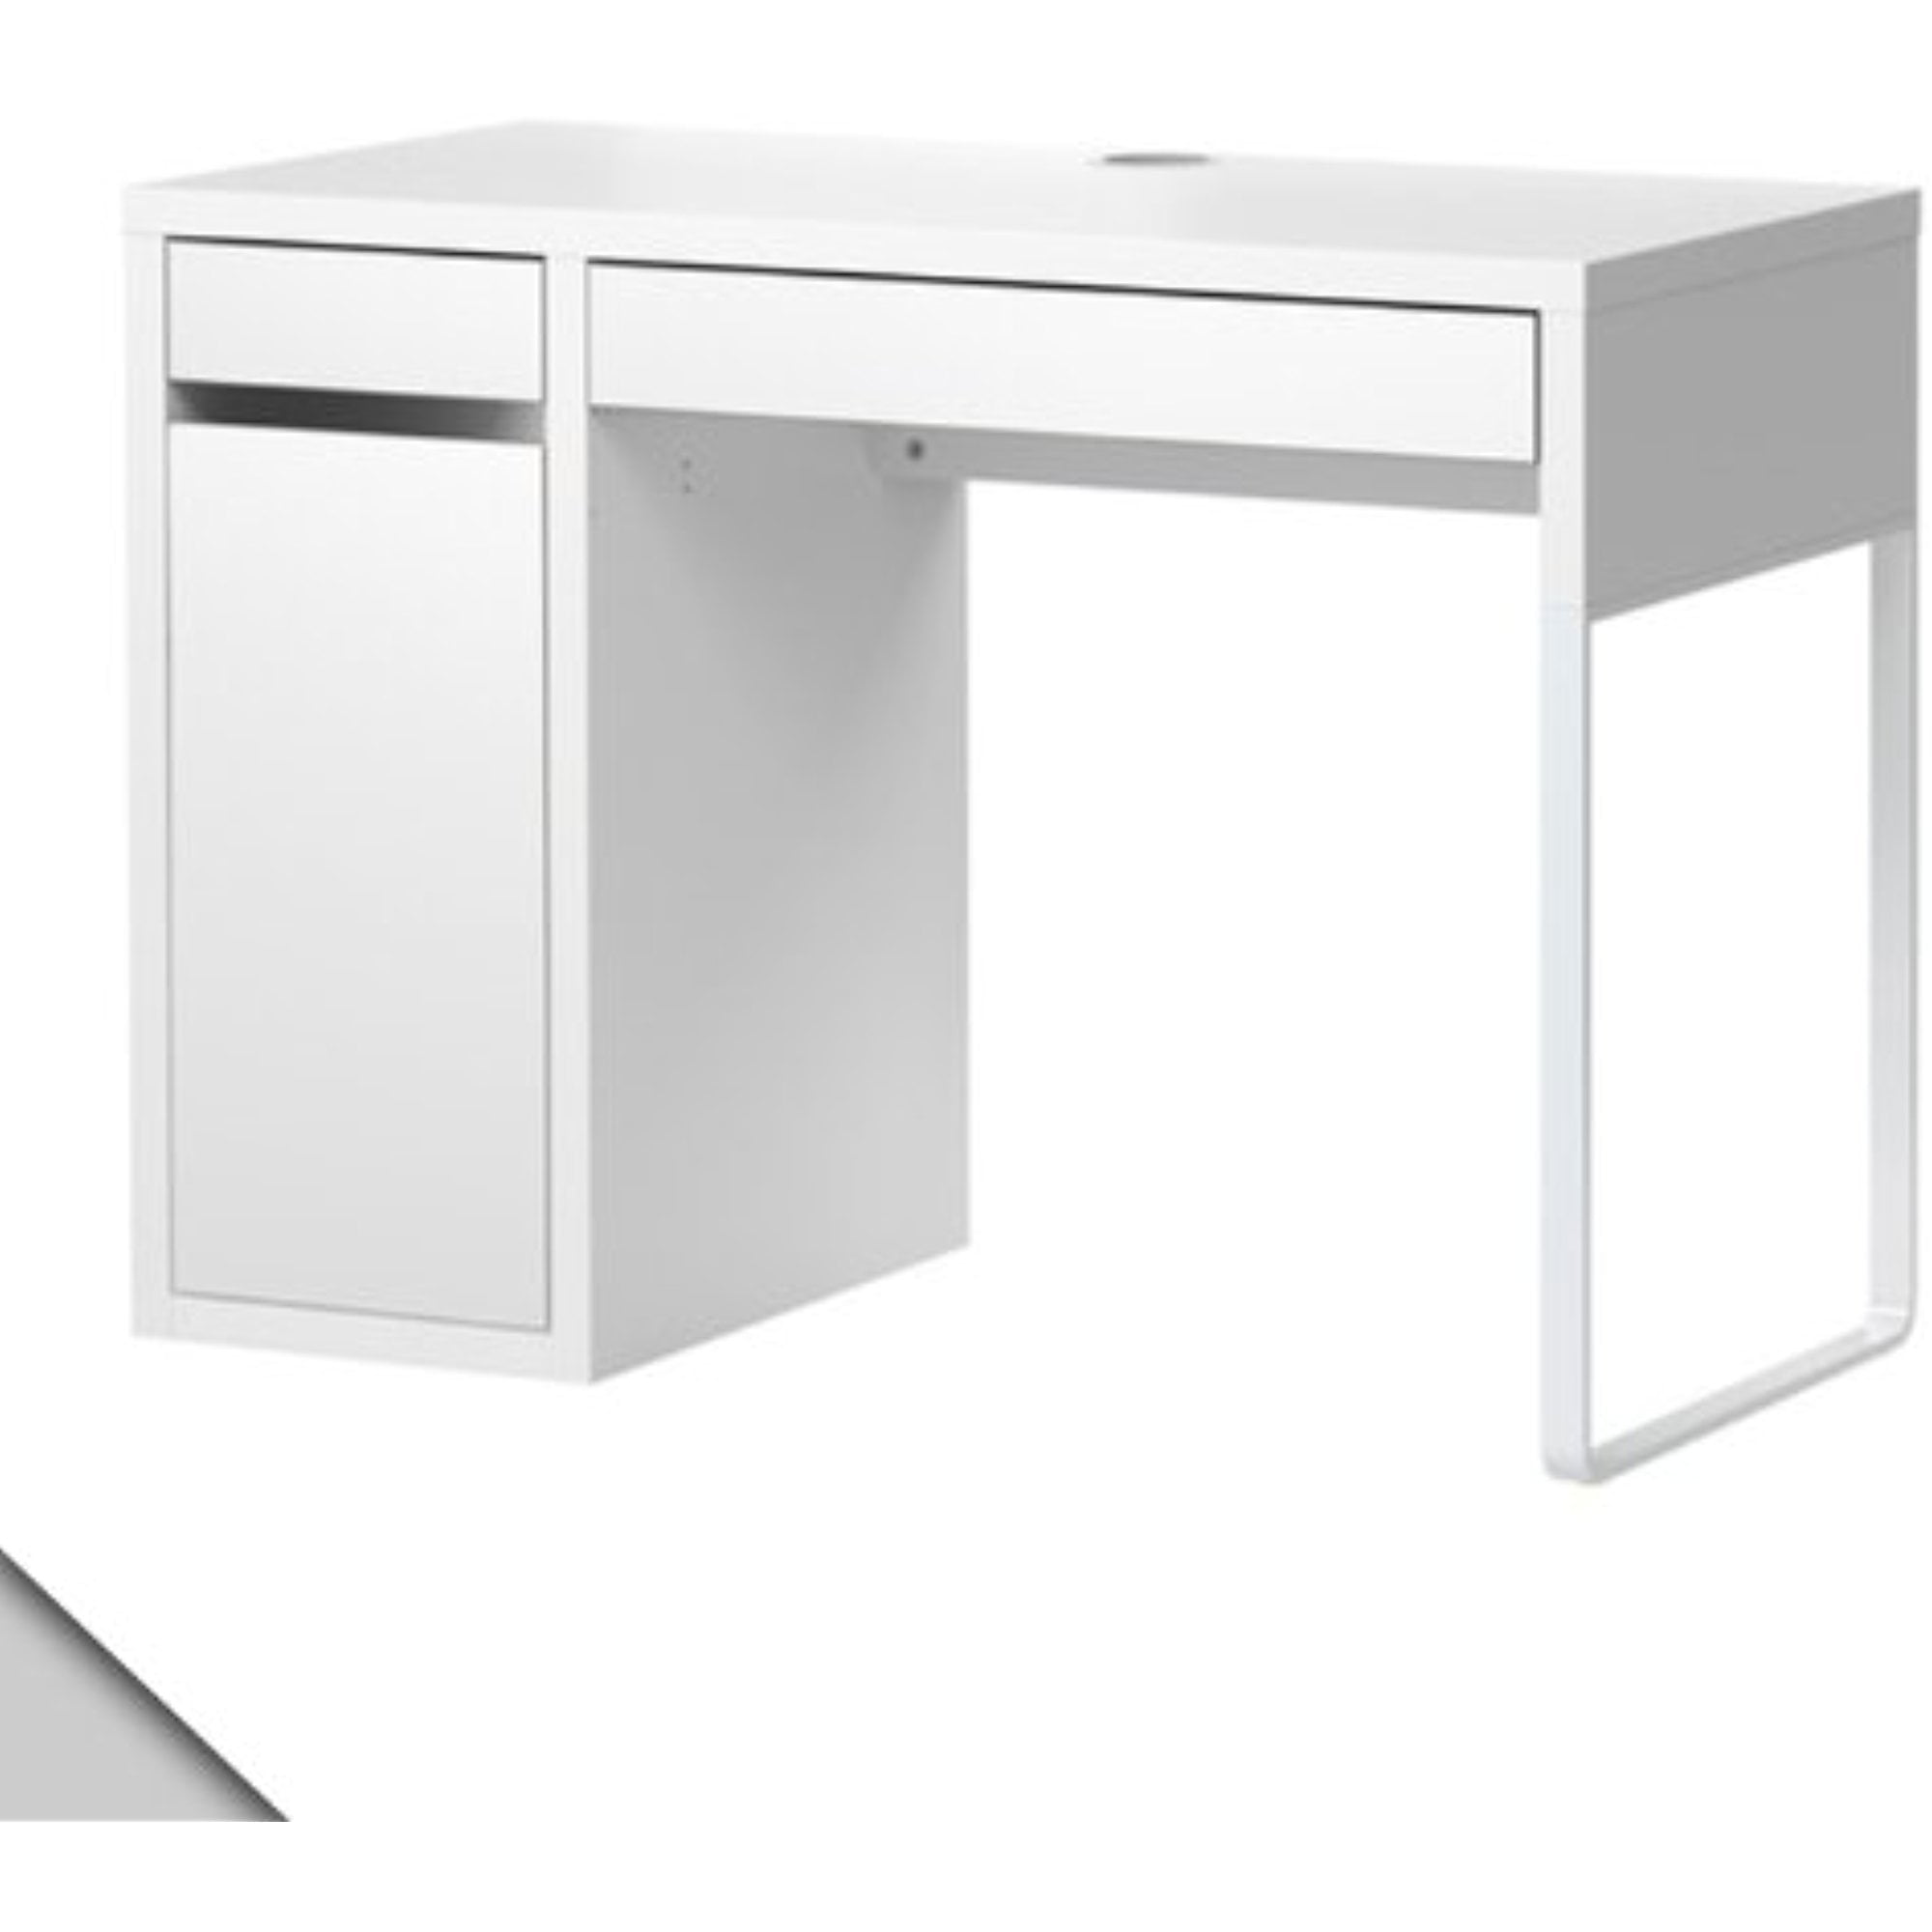 Ikea Micke Desk White W Shelf Inside 34210 5112 1610 Walmart